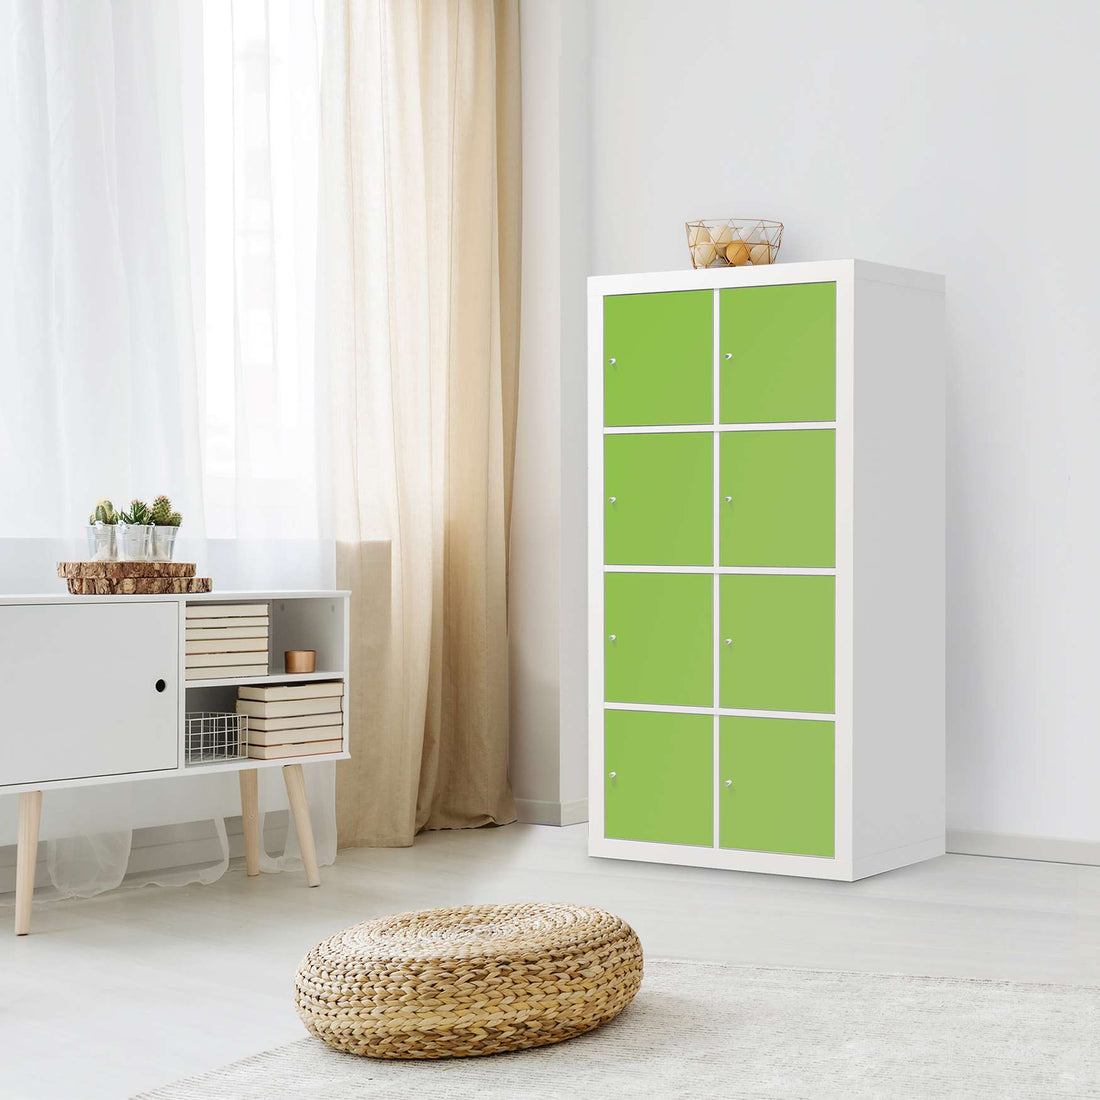 Folie für Möbel Hellgrün Dark - IKEA Kallax Regal 8 Türen - Wohnzimmer